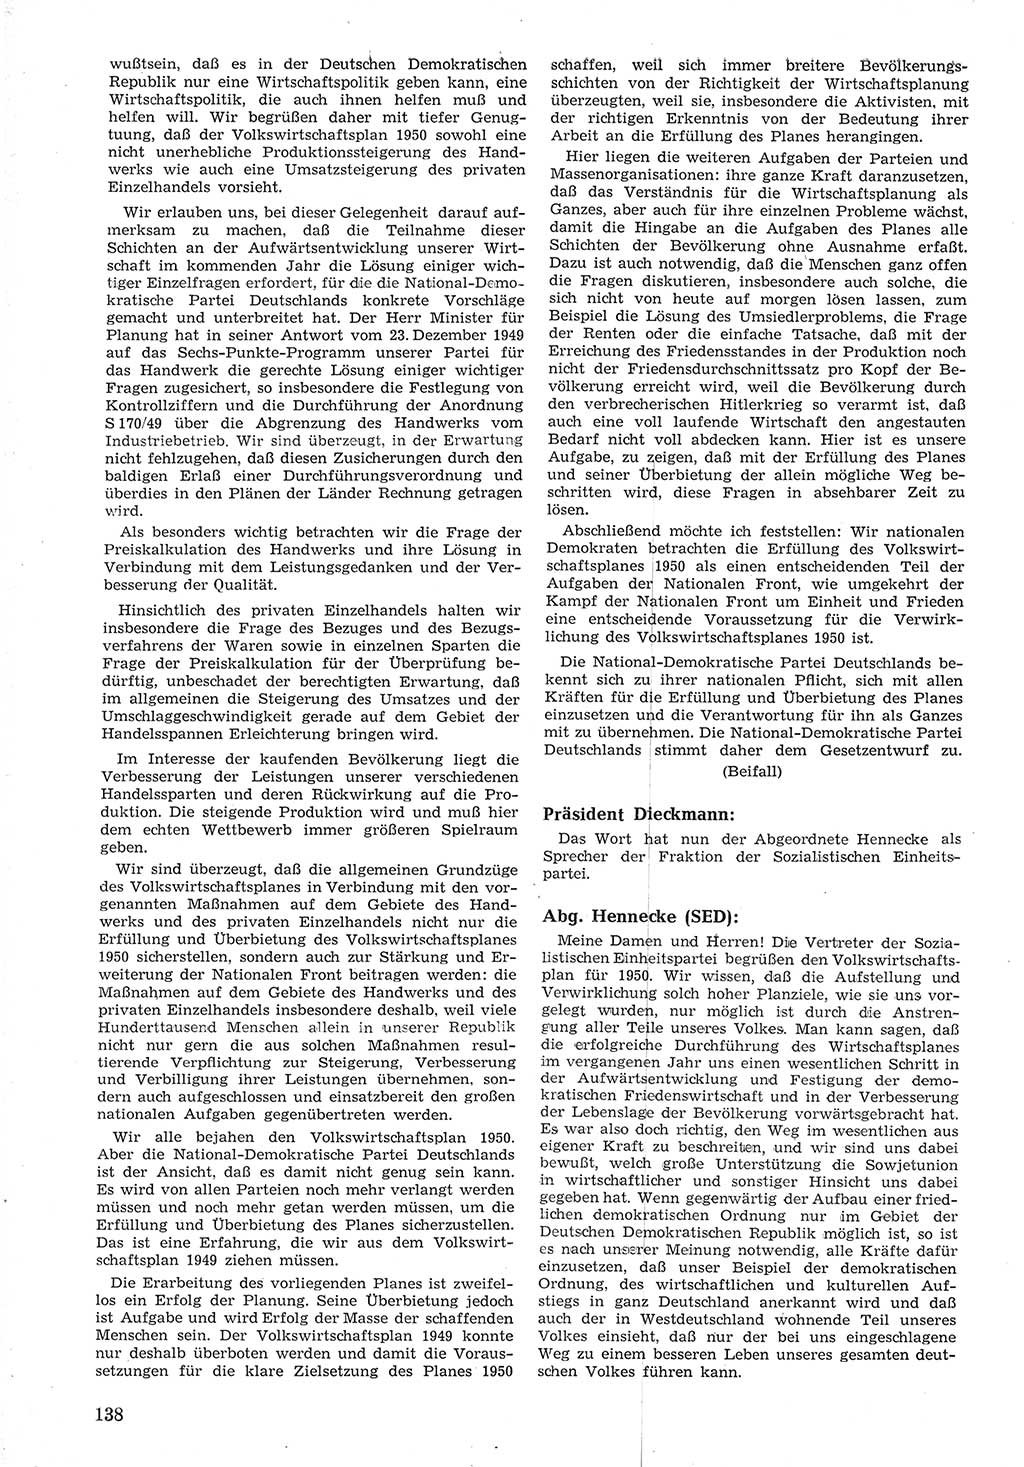 Provisorische Volkskammer (VK) der Deutschen Demokratischen Republik (DDR) 1949-1950, Dokument 150 (Prov. VK DDR 1949-1950, Dok. 150)